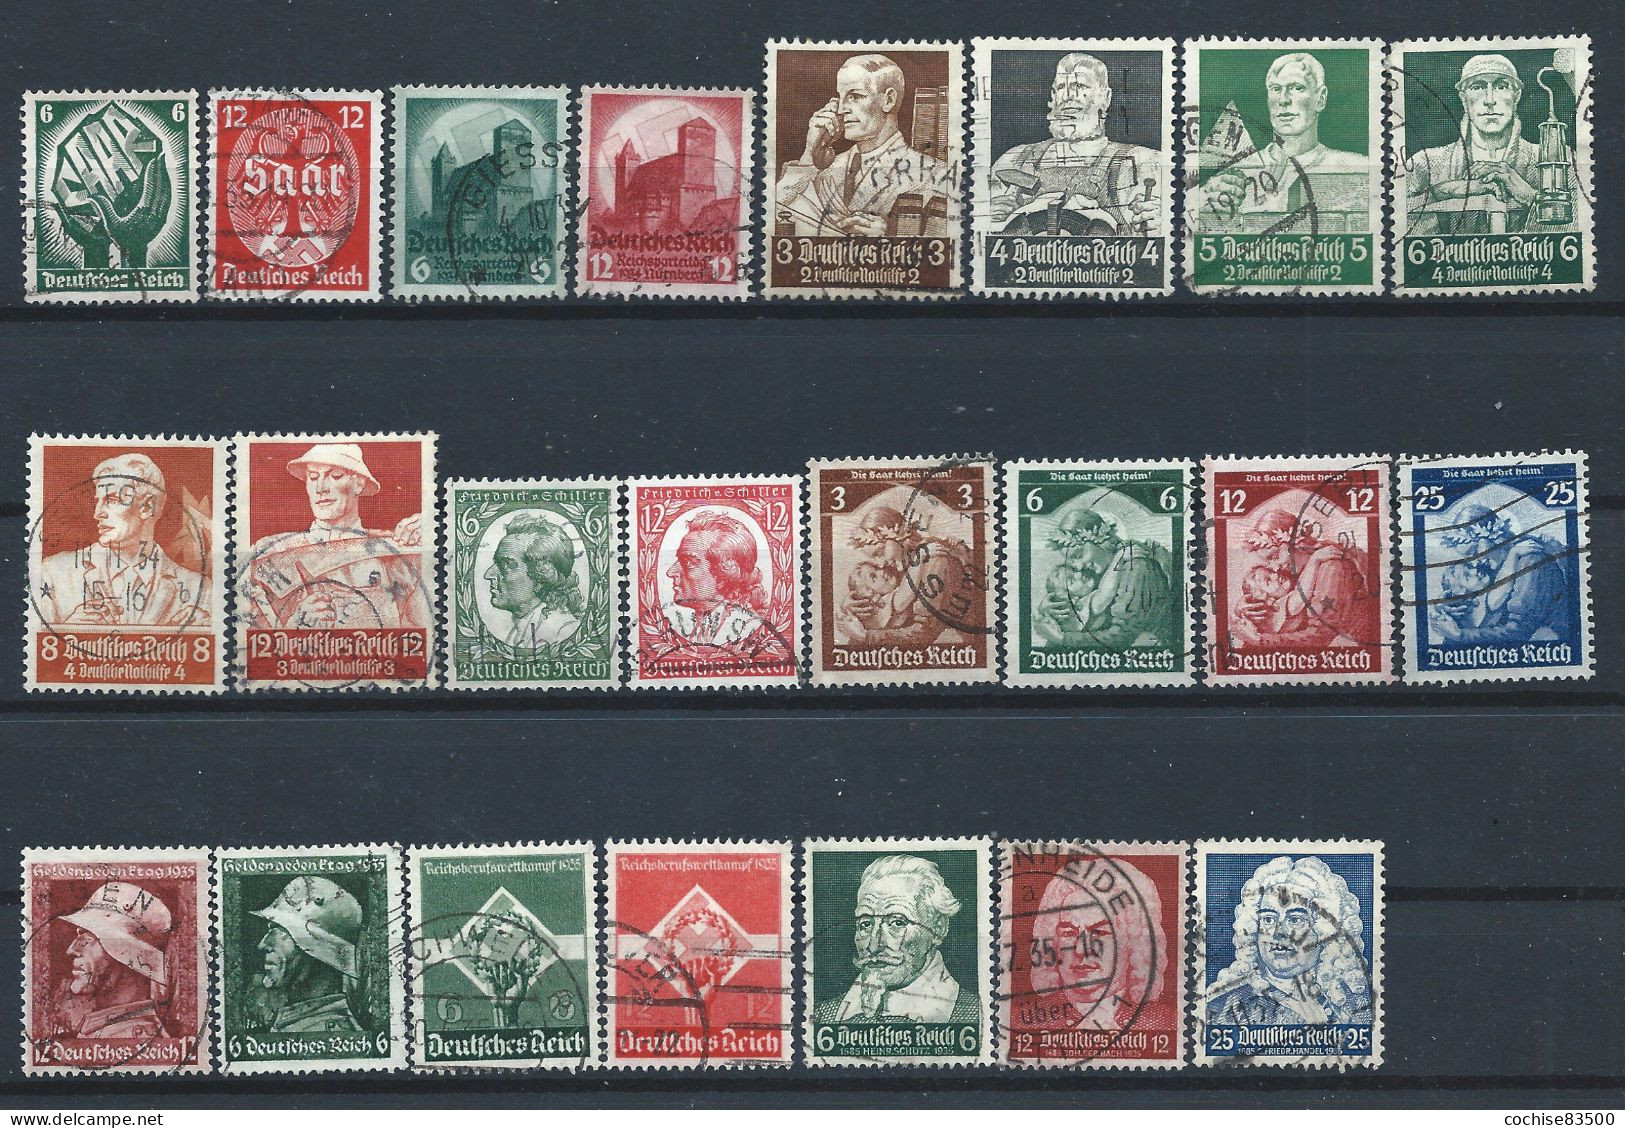 Allemagne Empire Lot 23 Tp Obl (FU) Année 1934/35 - Sujets Divers - Used Stamps